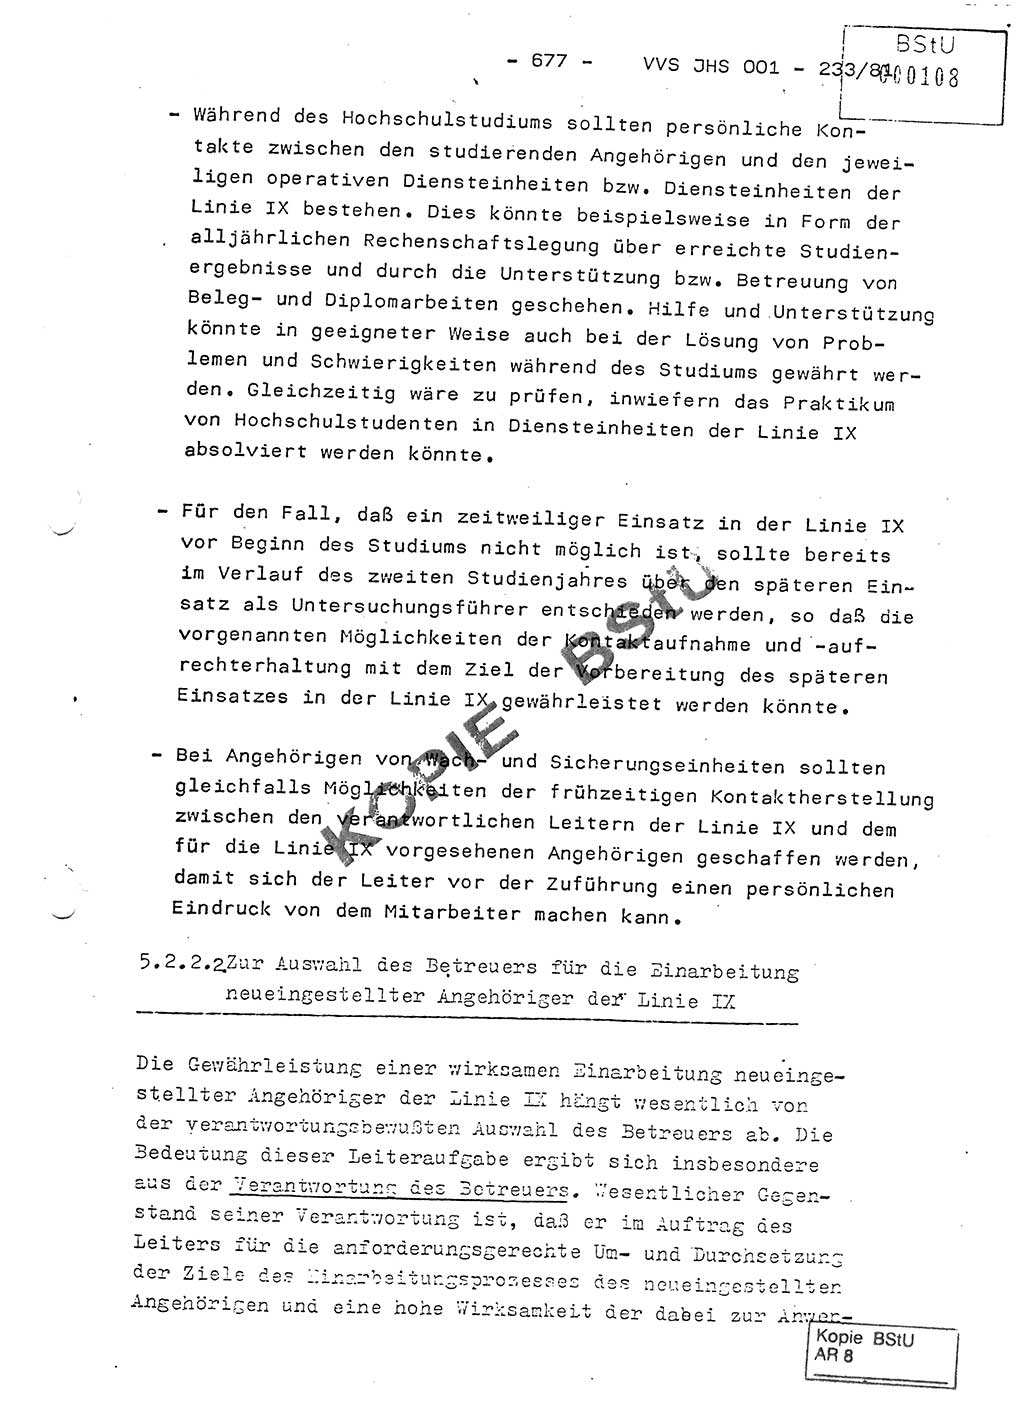 Dissertation Oberstleutnant Horst Zank (JHS), Oberstleutnant Dr. Karl-Heinz Knoblauch (JHS), Oberstleutnant Gustav-Adolf Kowalewski (HA Ⅸ), Oberstleutnant Wolfgang Plötner (HA Ⅸ), Ministerium für Staatssicherheit (MfS) [Deutsche Demokratische Republik (DDR)], Juristische Hochschule (JHS), Vertrauliche Verschlußsache (VVS) o001-233/81, Potsdam 1981, Blatt 677 (Diss. MfS DDR JHS VVS o001-233/81 1981, Bl. 677)